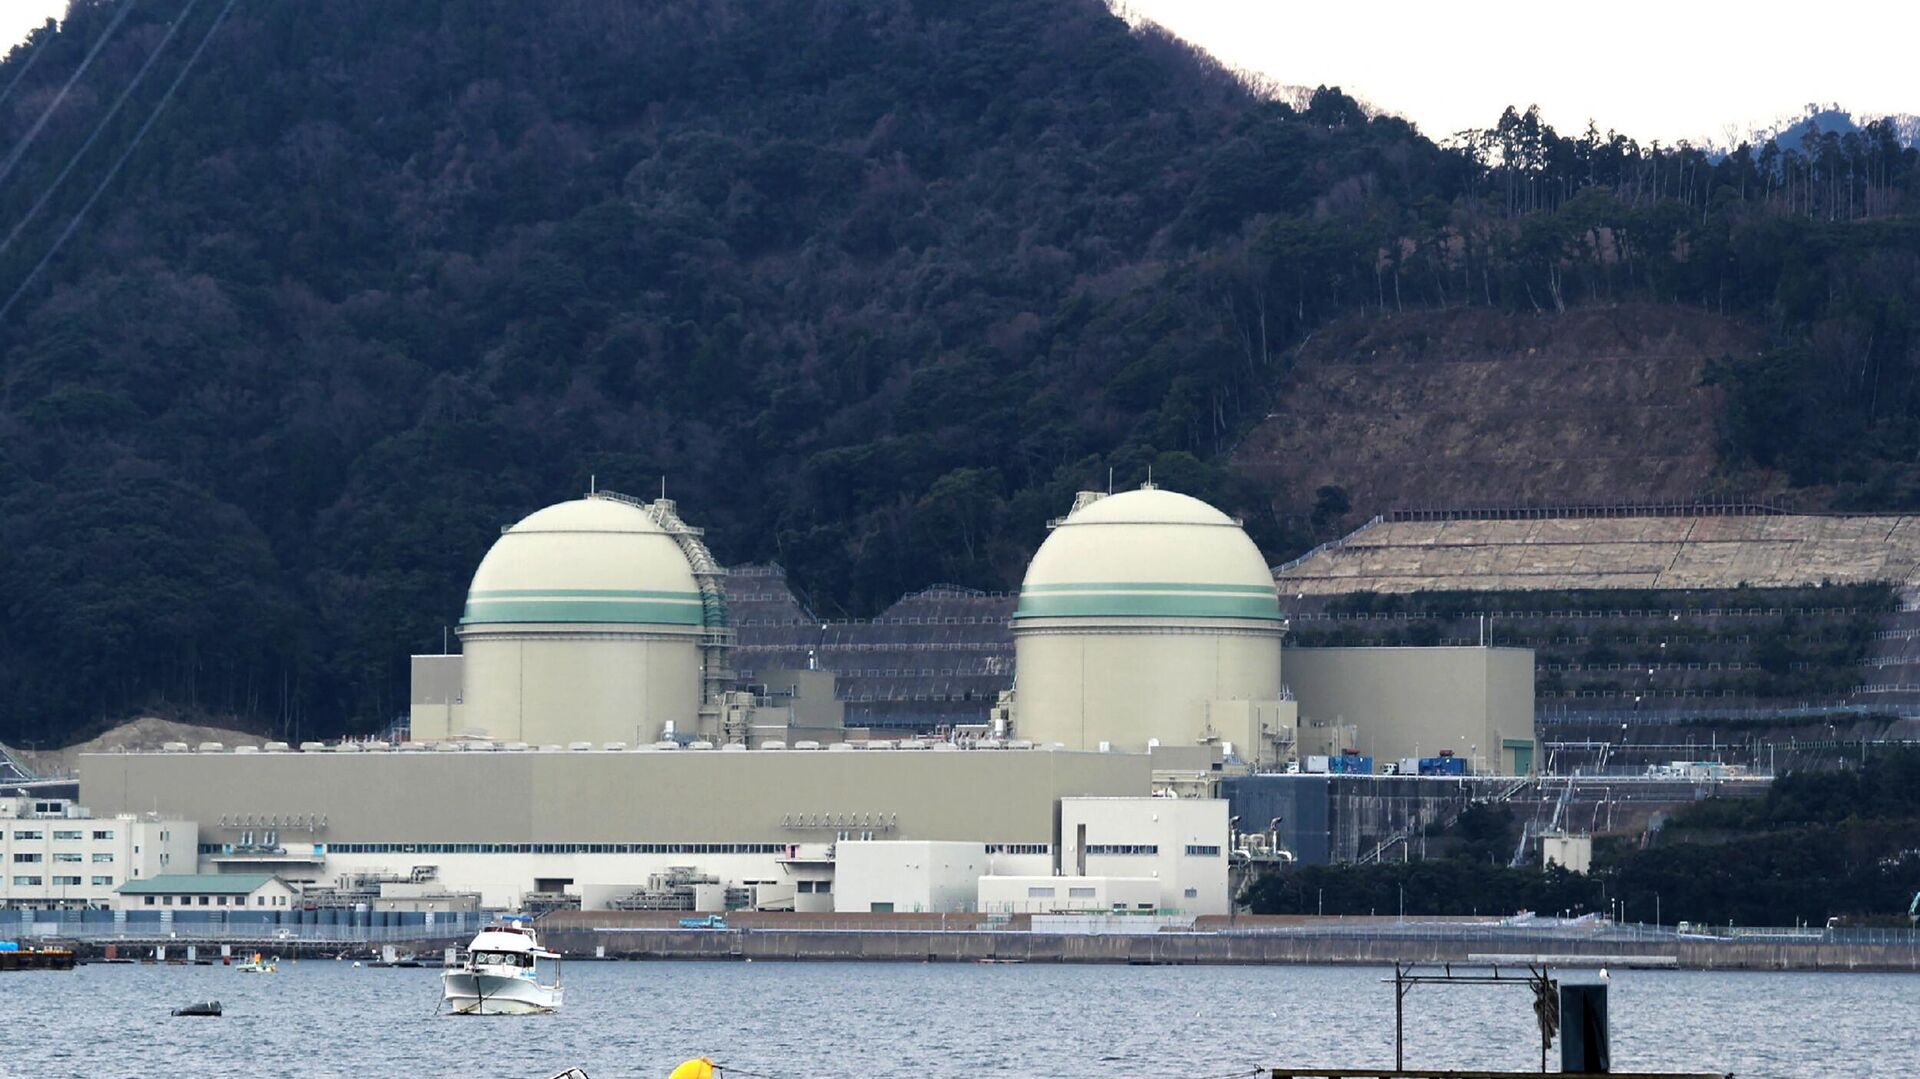 日本福岛核电站废水事件：影响究竟有多大？我们有能力阻止吗？ - 知乎